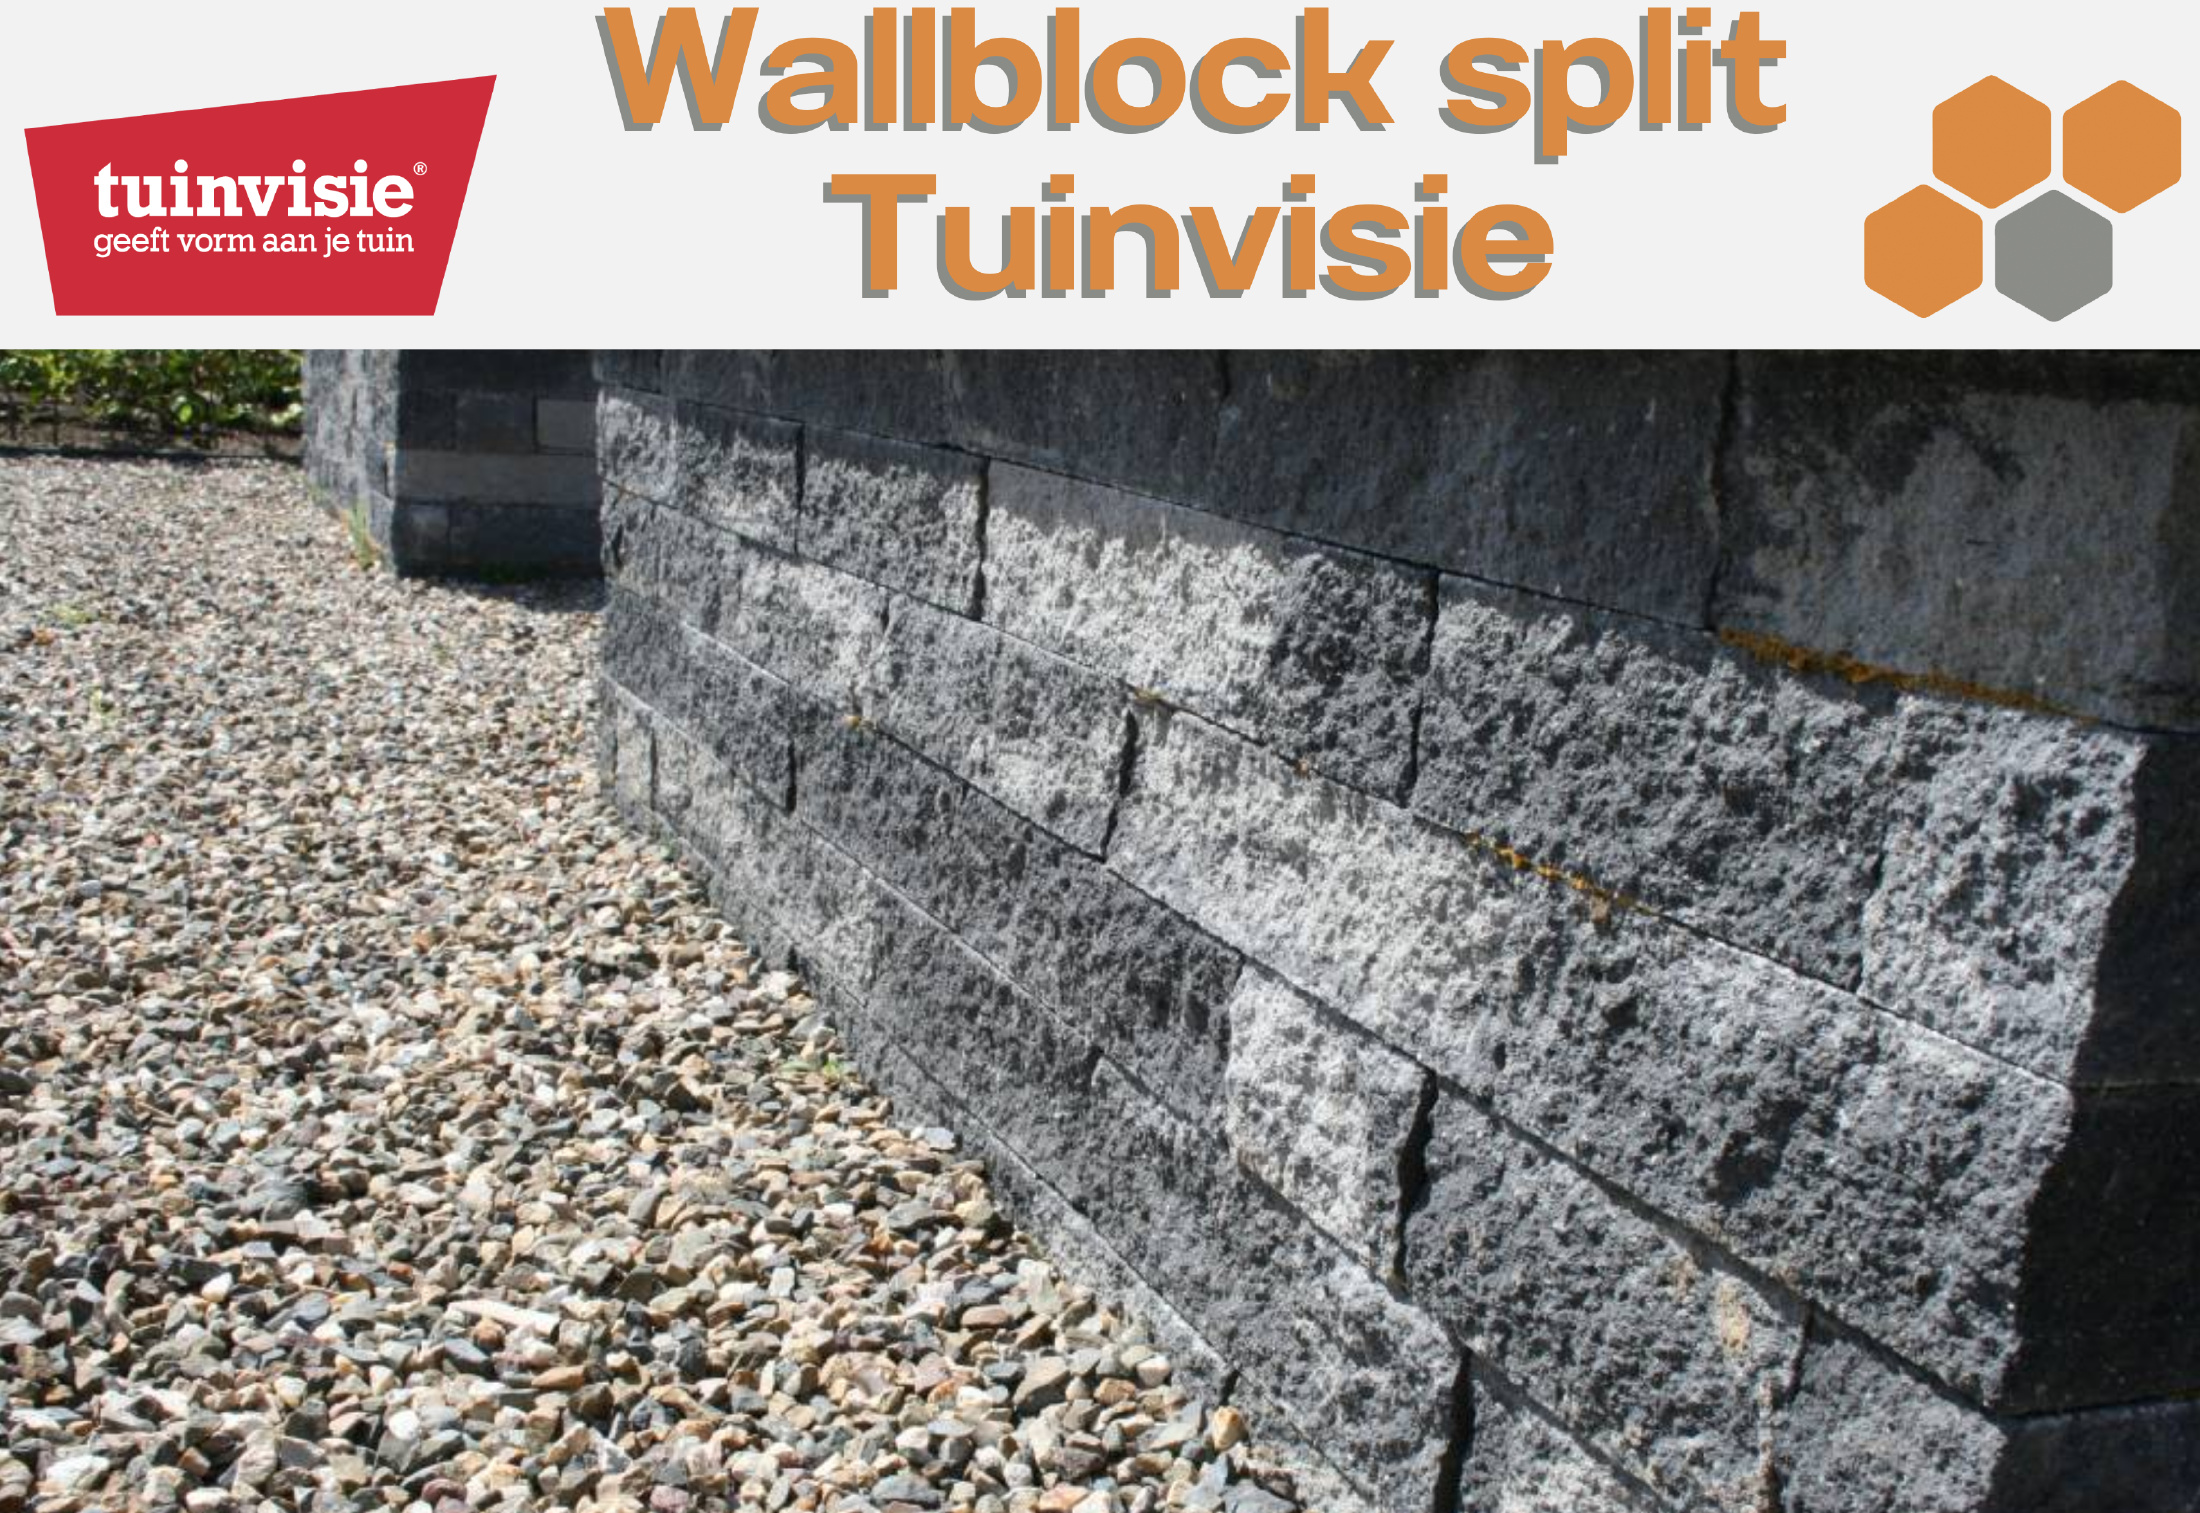 wallblock split tuinvisie